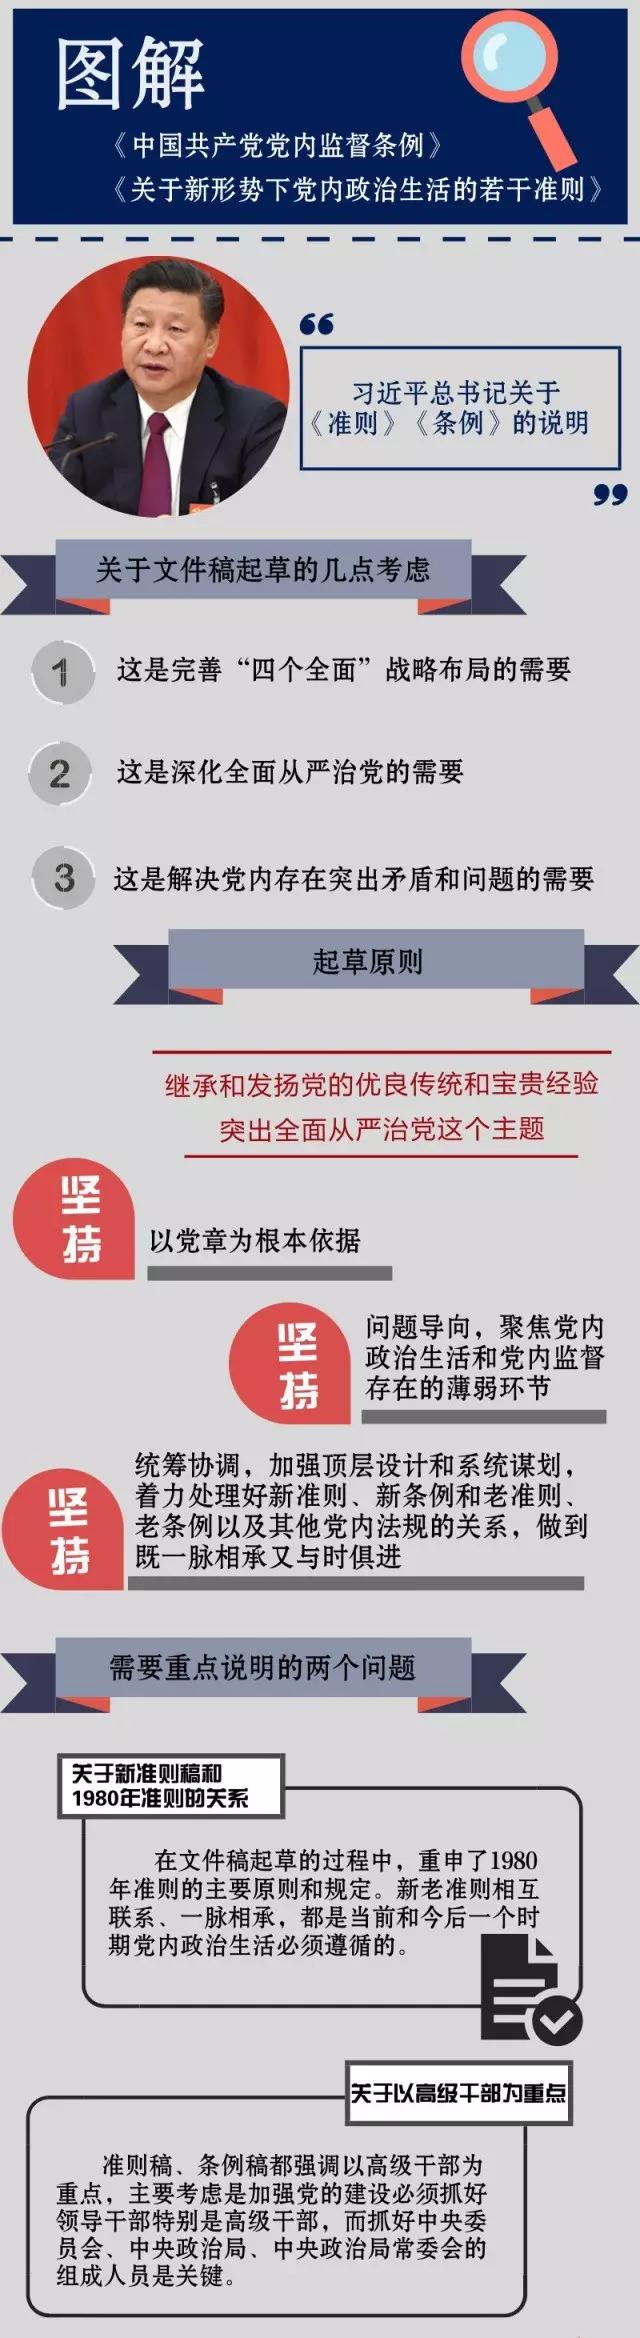 一图读懂《关于新形势下党内政治生活的若干准则》《中国共产党党内监督条例》